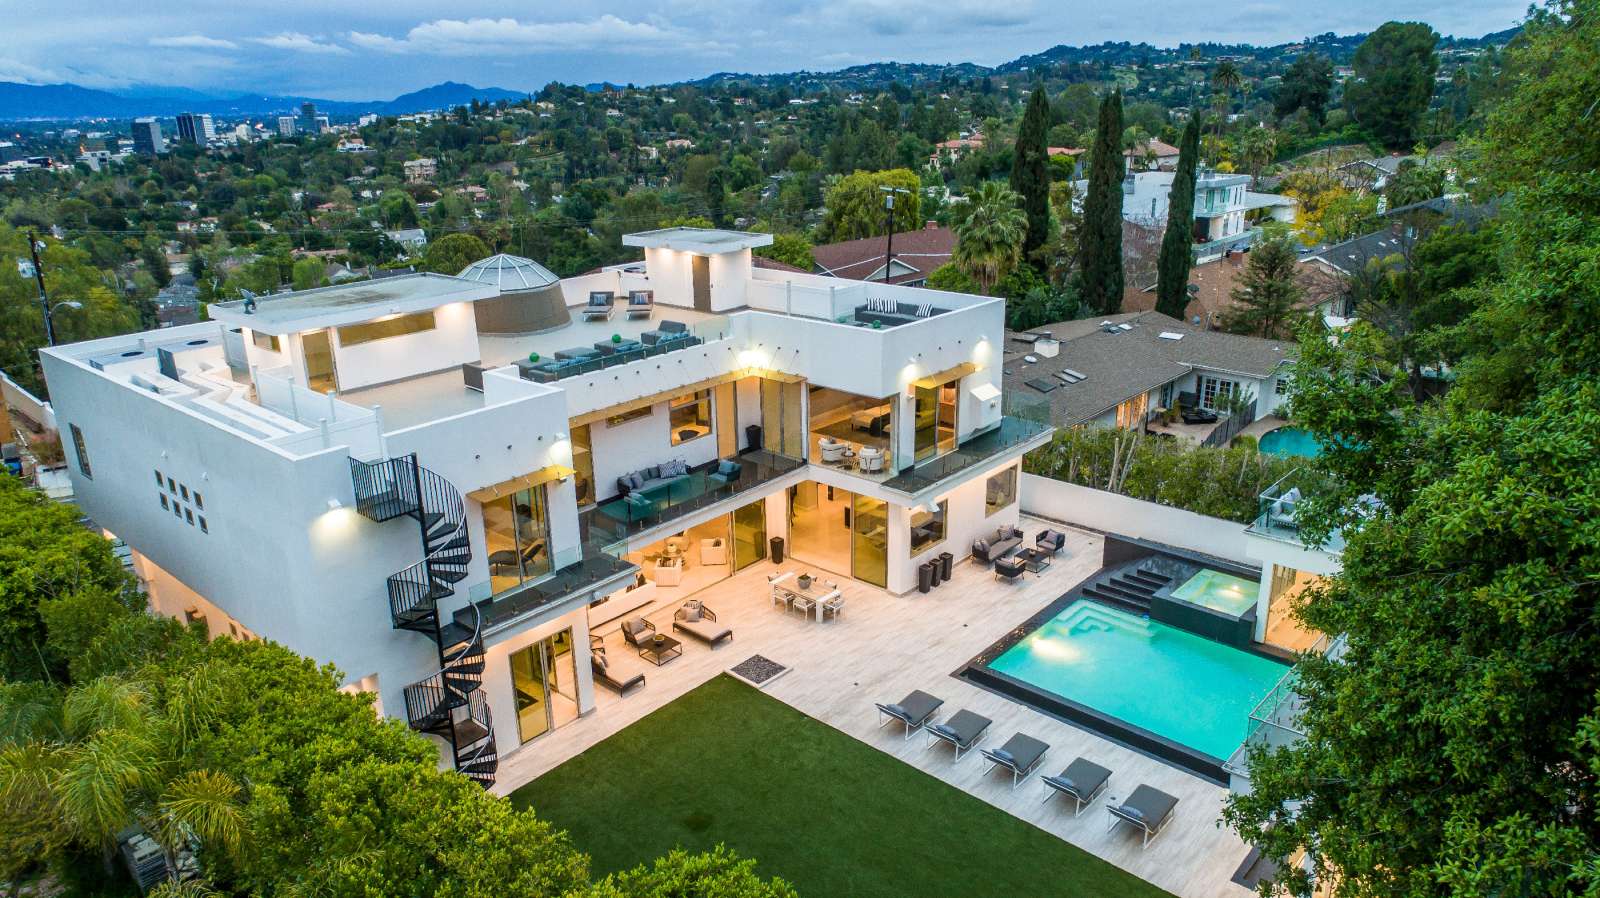 La La Land House Hits The Market For $6.45 Million